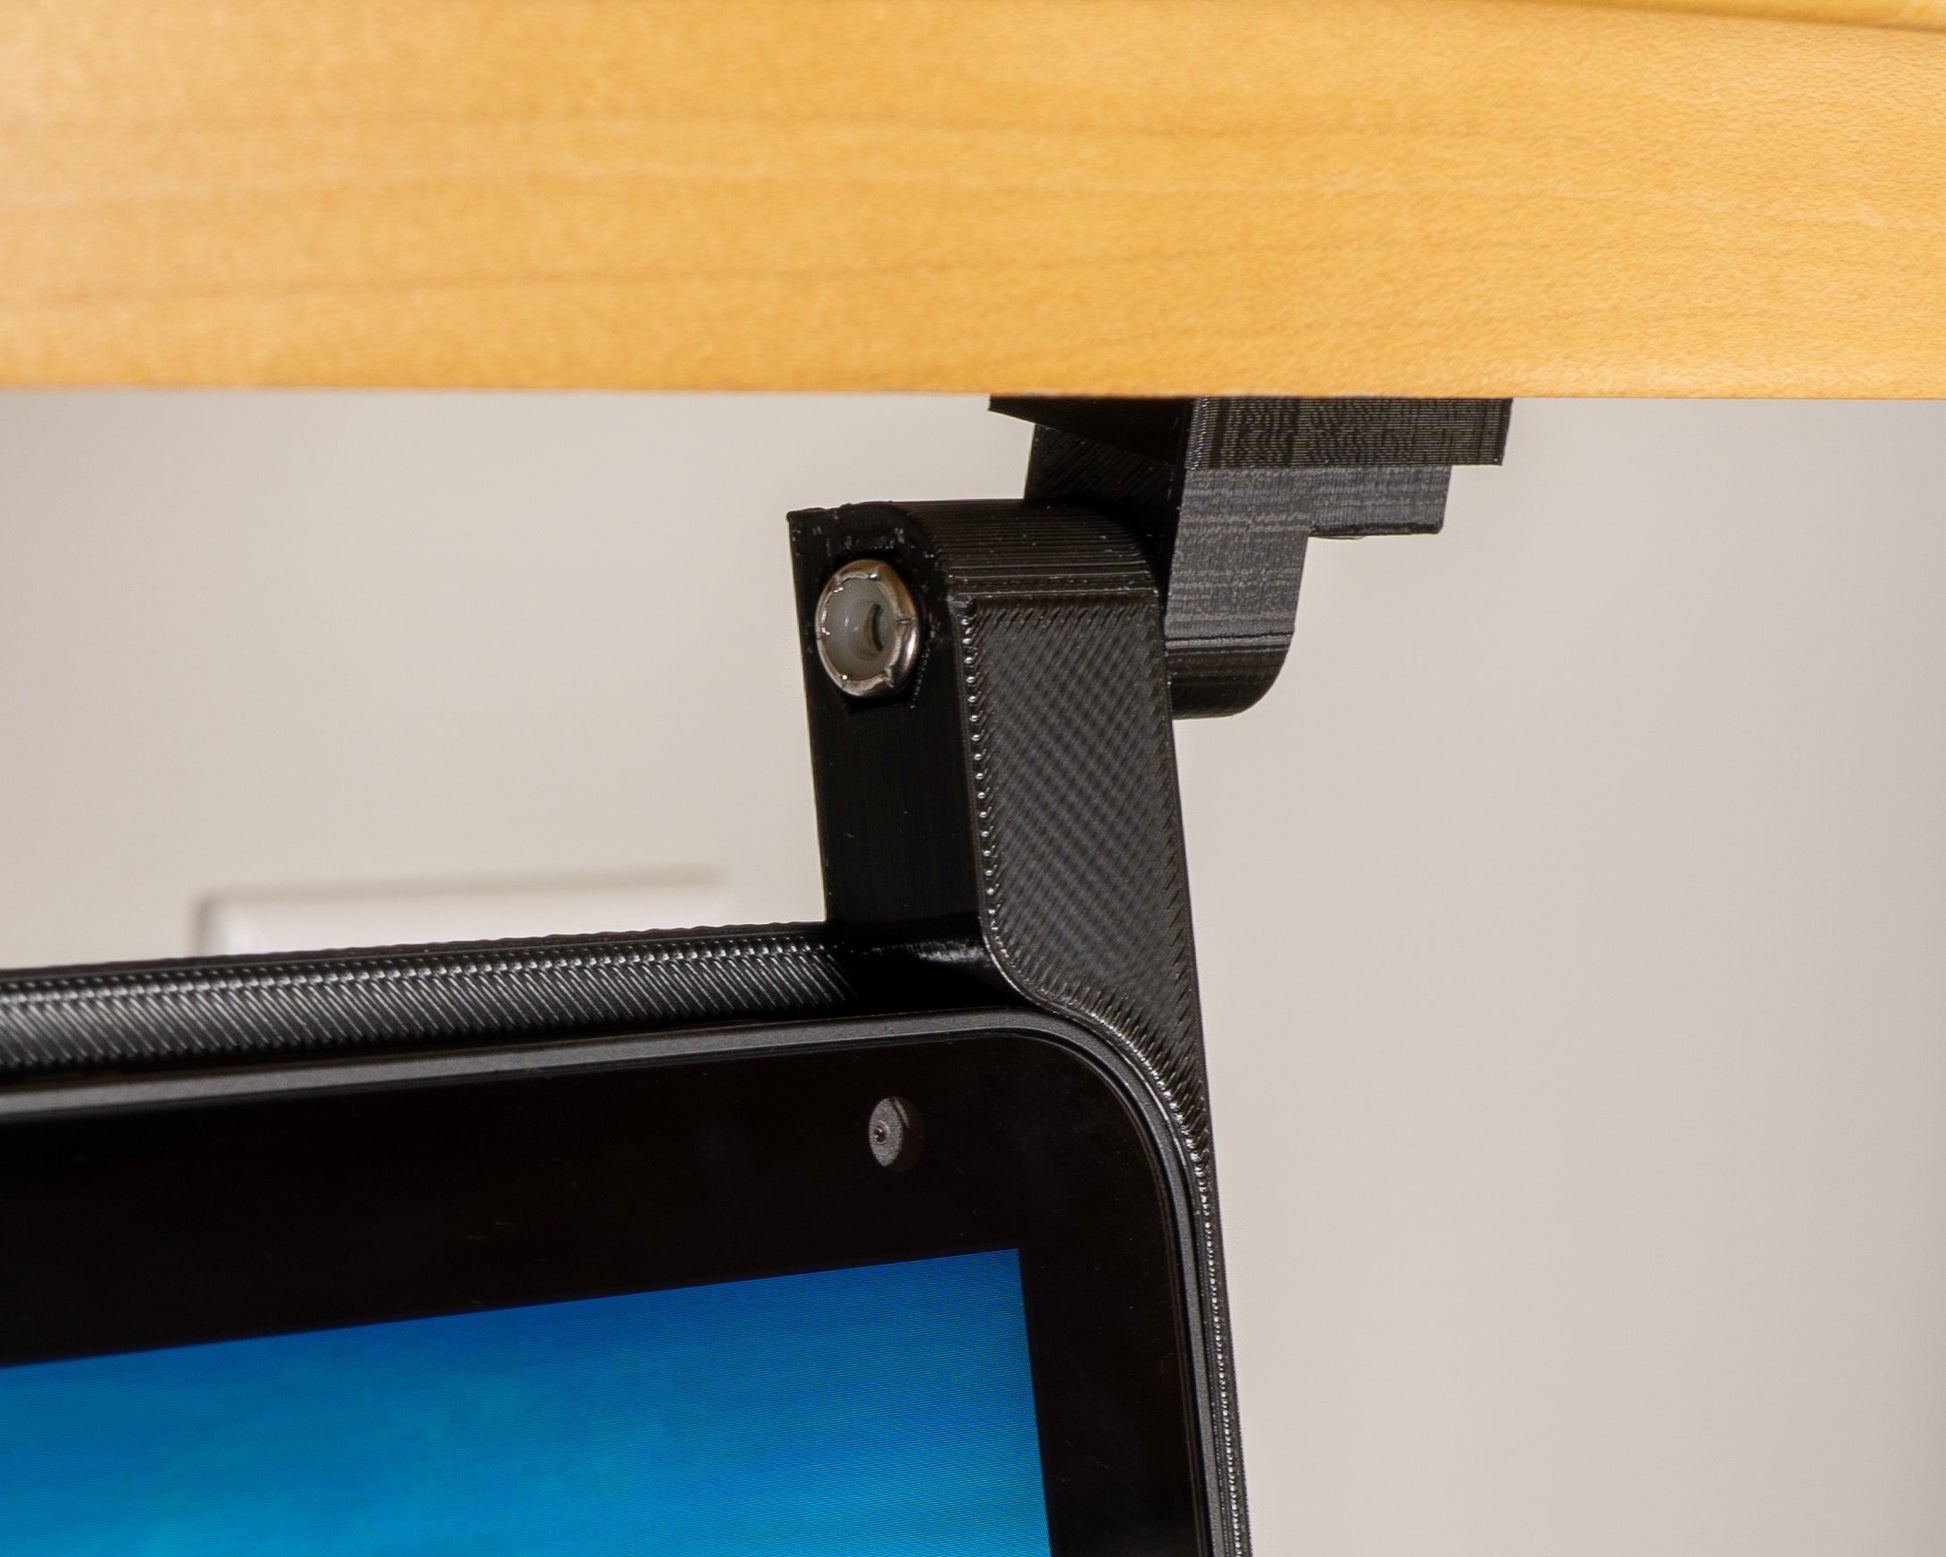 Google Nest Hub Home Under Cabinet Mount 1st & 2nd Gen Compatible All  Hardware Included Kitchen Cabinet Bracket 